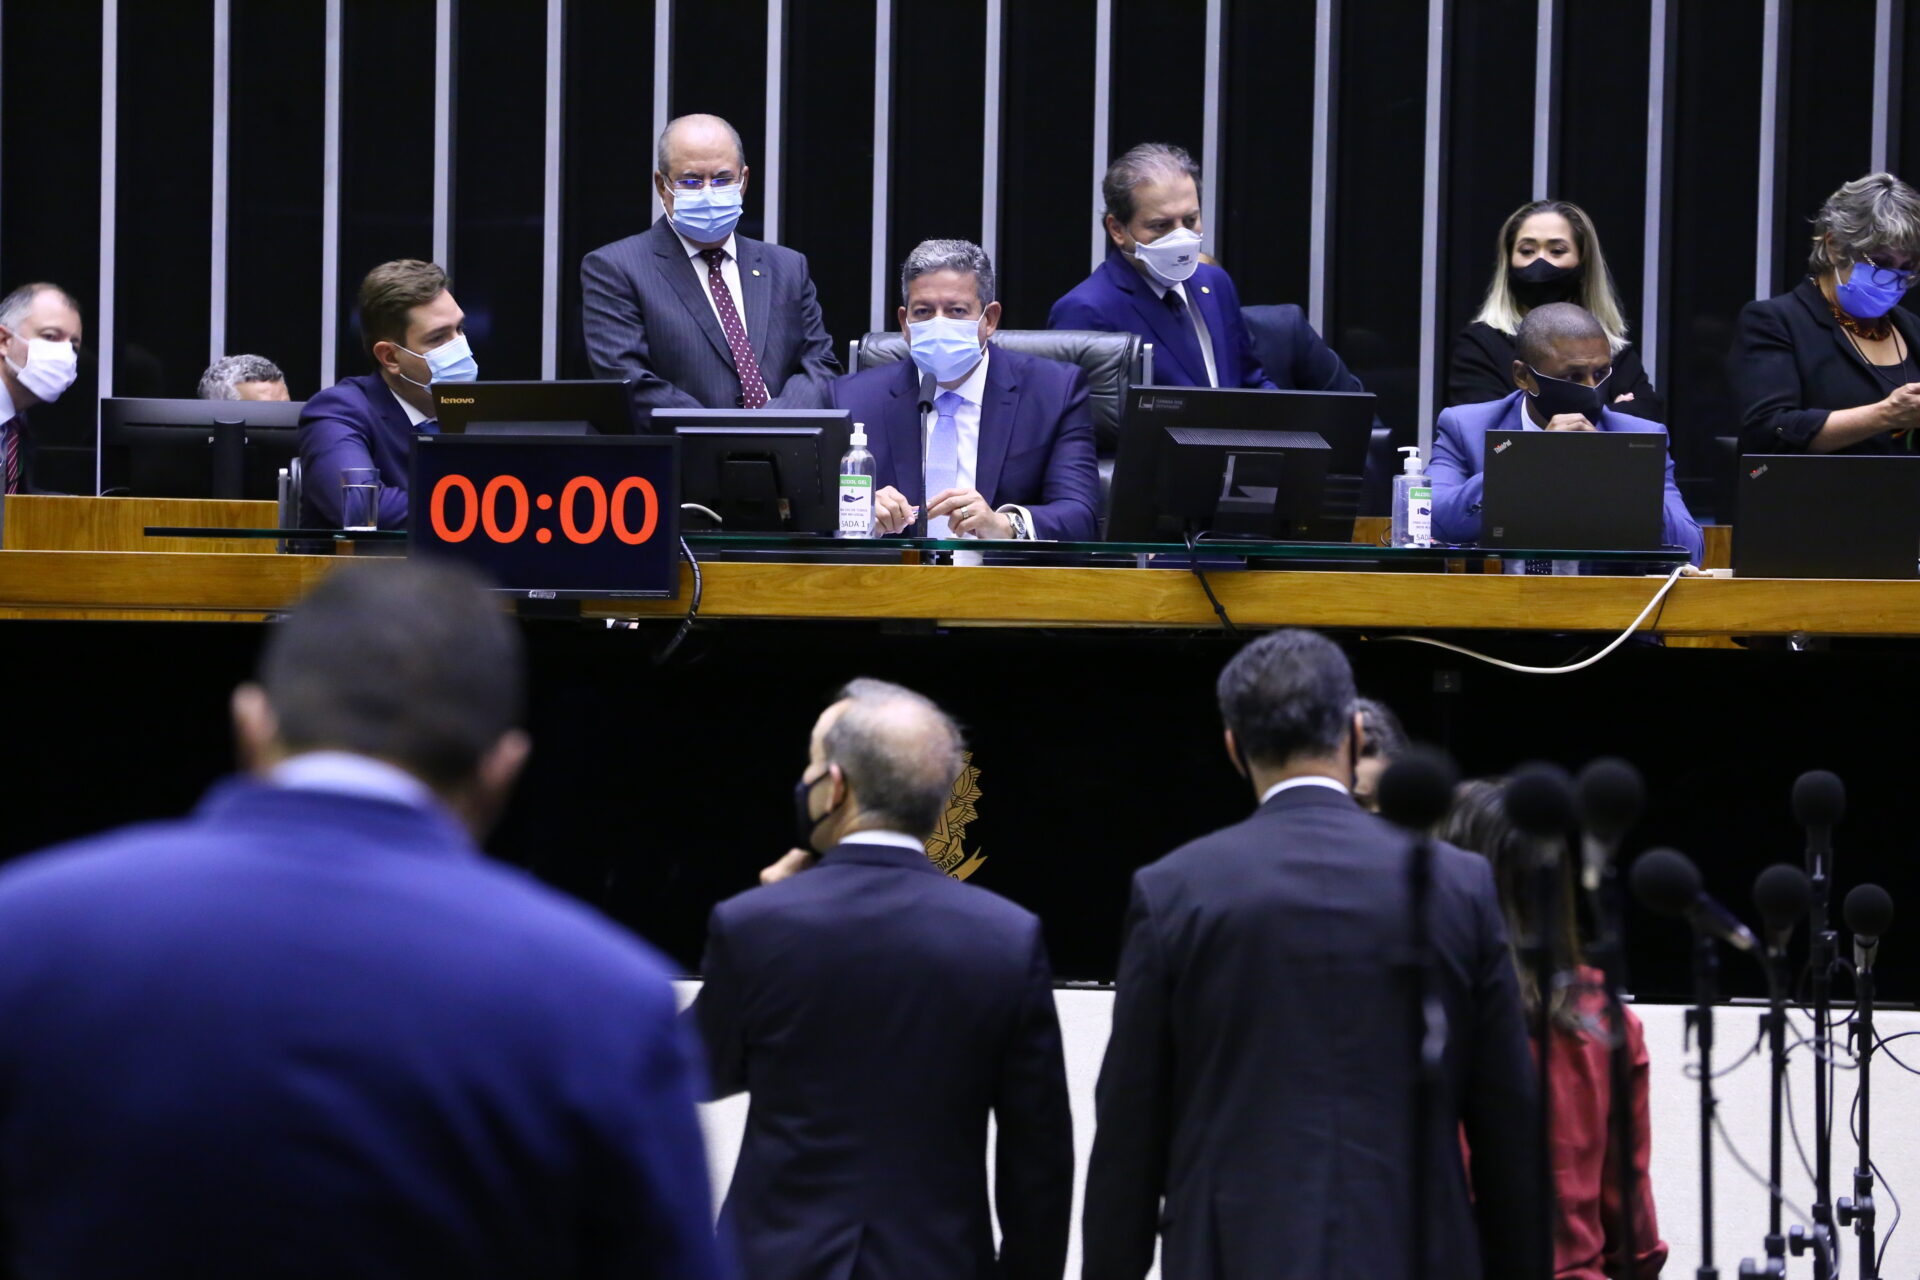 Foto: Cleia Viana/Câmara dos Deputados